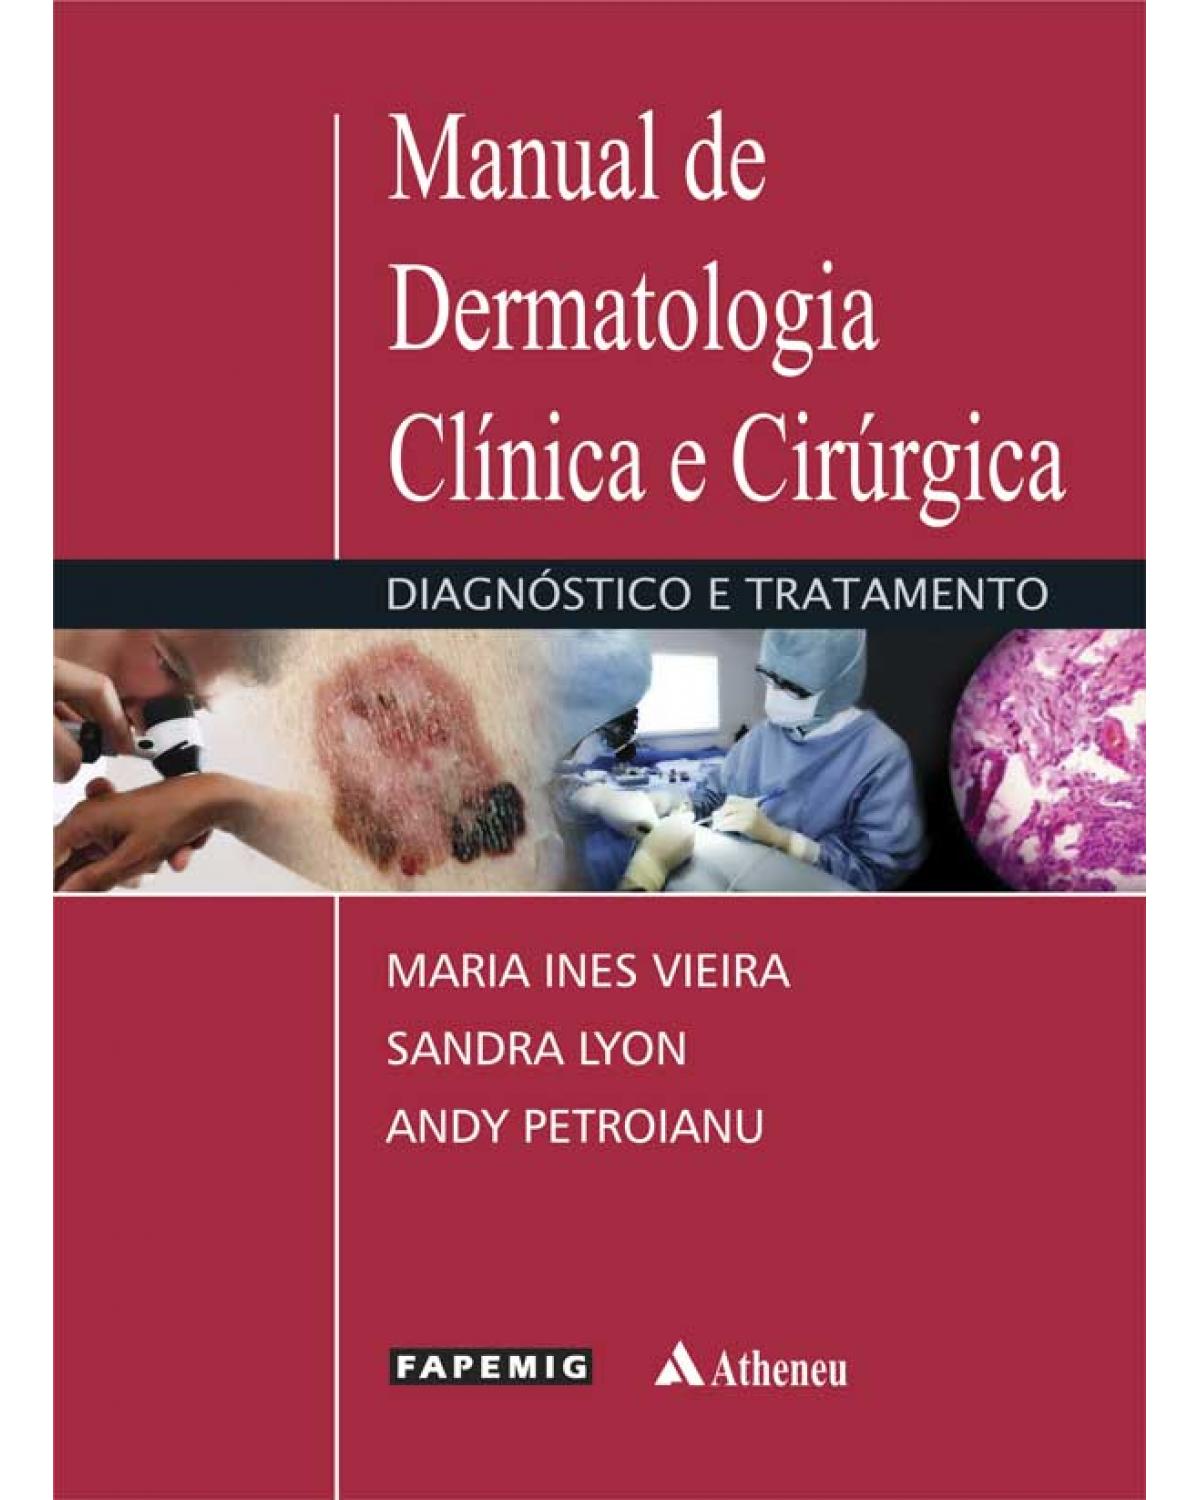 Manual de dermatologia clínica e cirúrgica - diagnóstico e tratamento - 1ª Edição | 2013